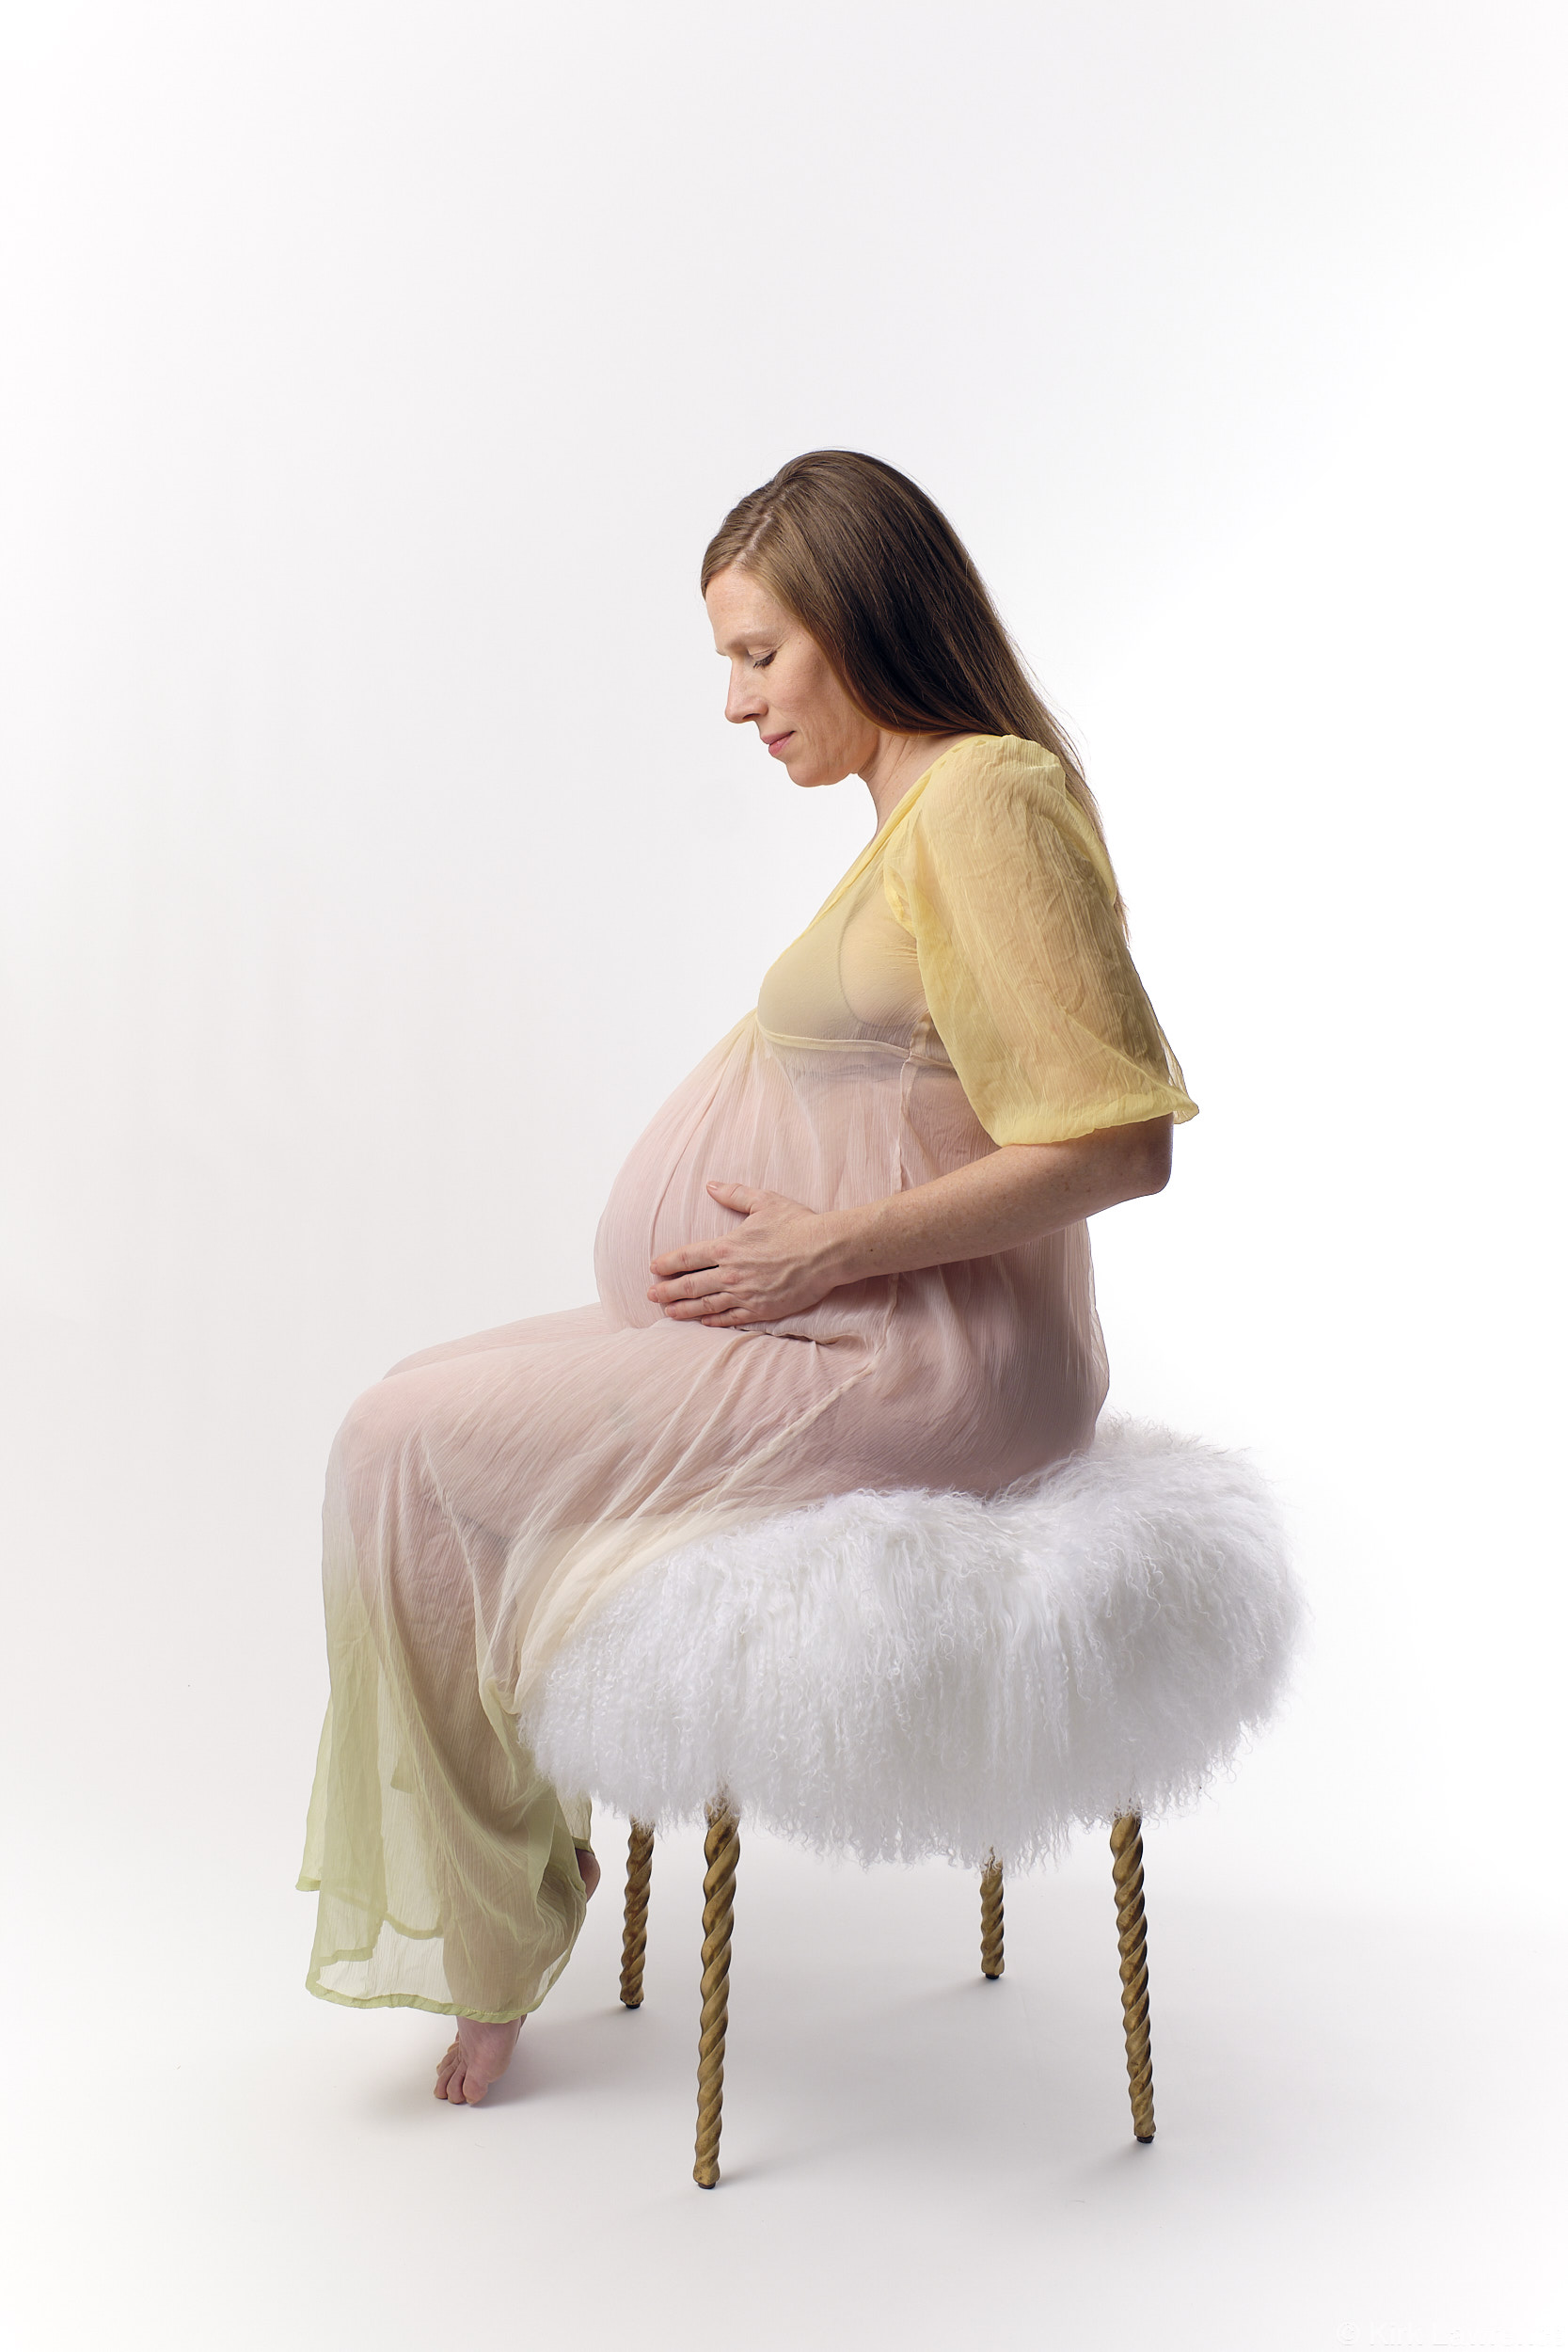 maternity_portrait_pastel_colors_dress.jpg